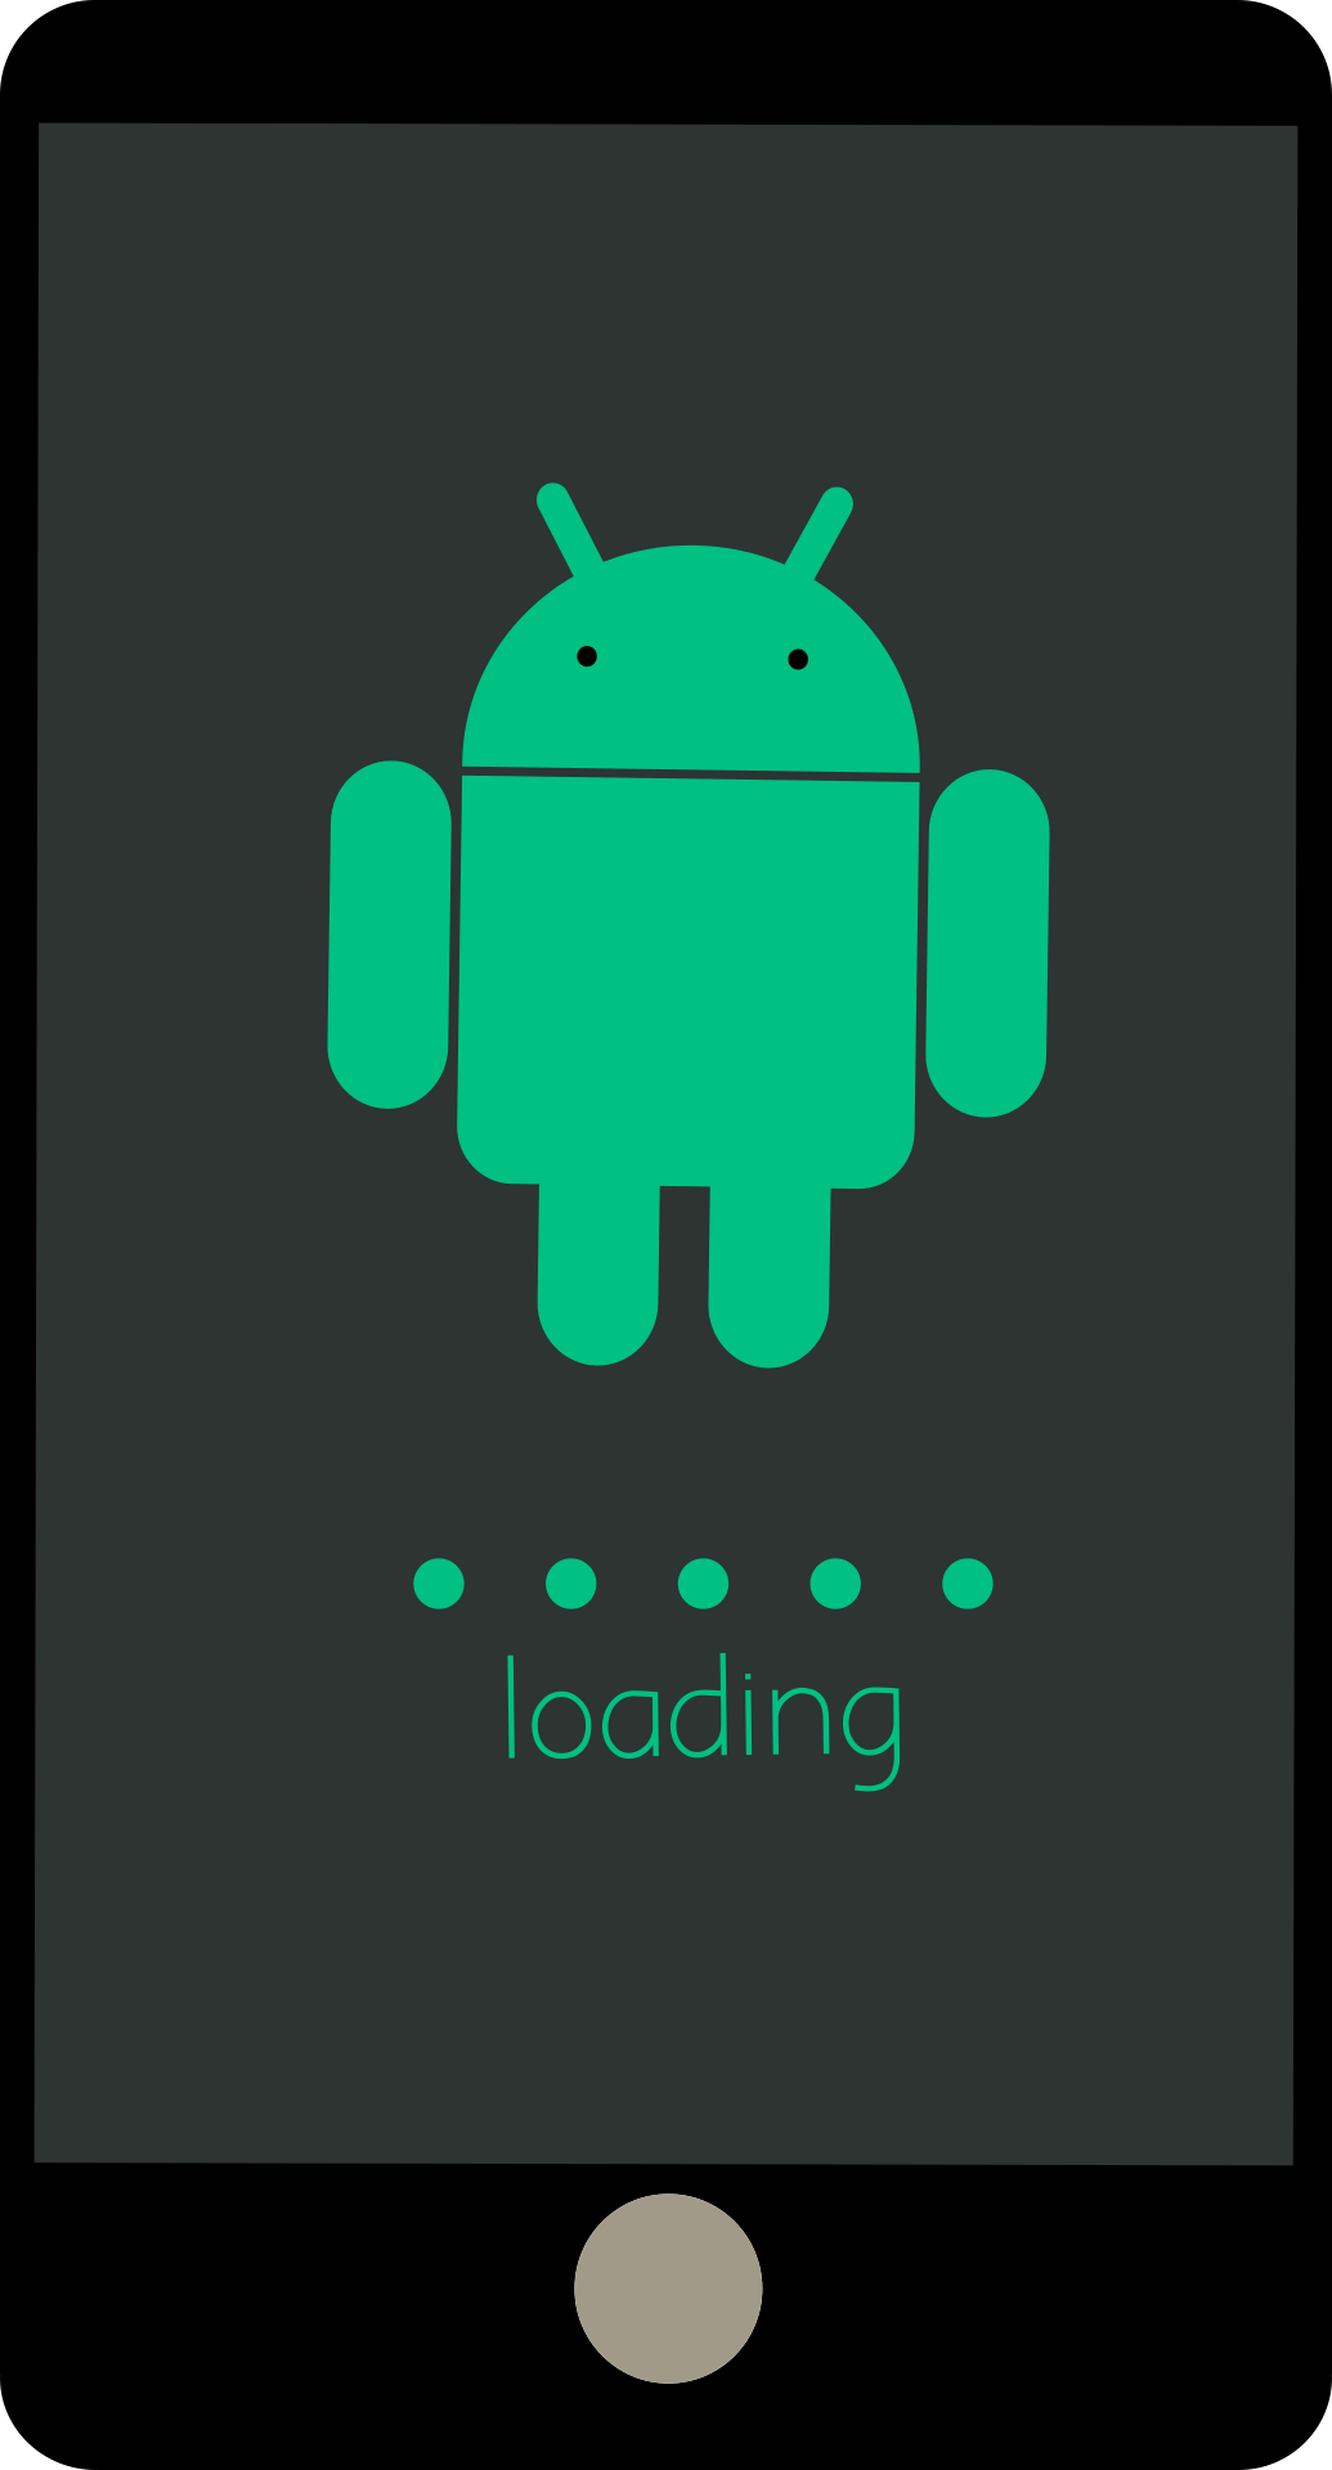 Обновление Android до версии 5.0 Lollipop